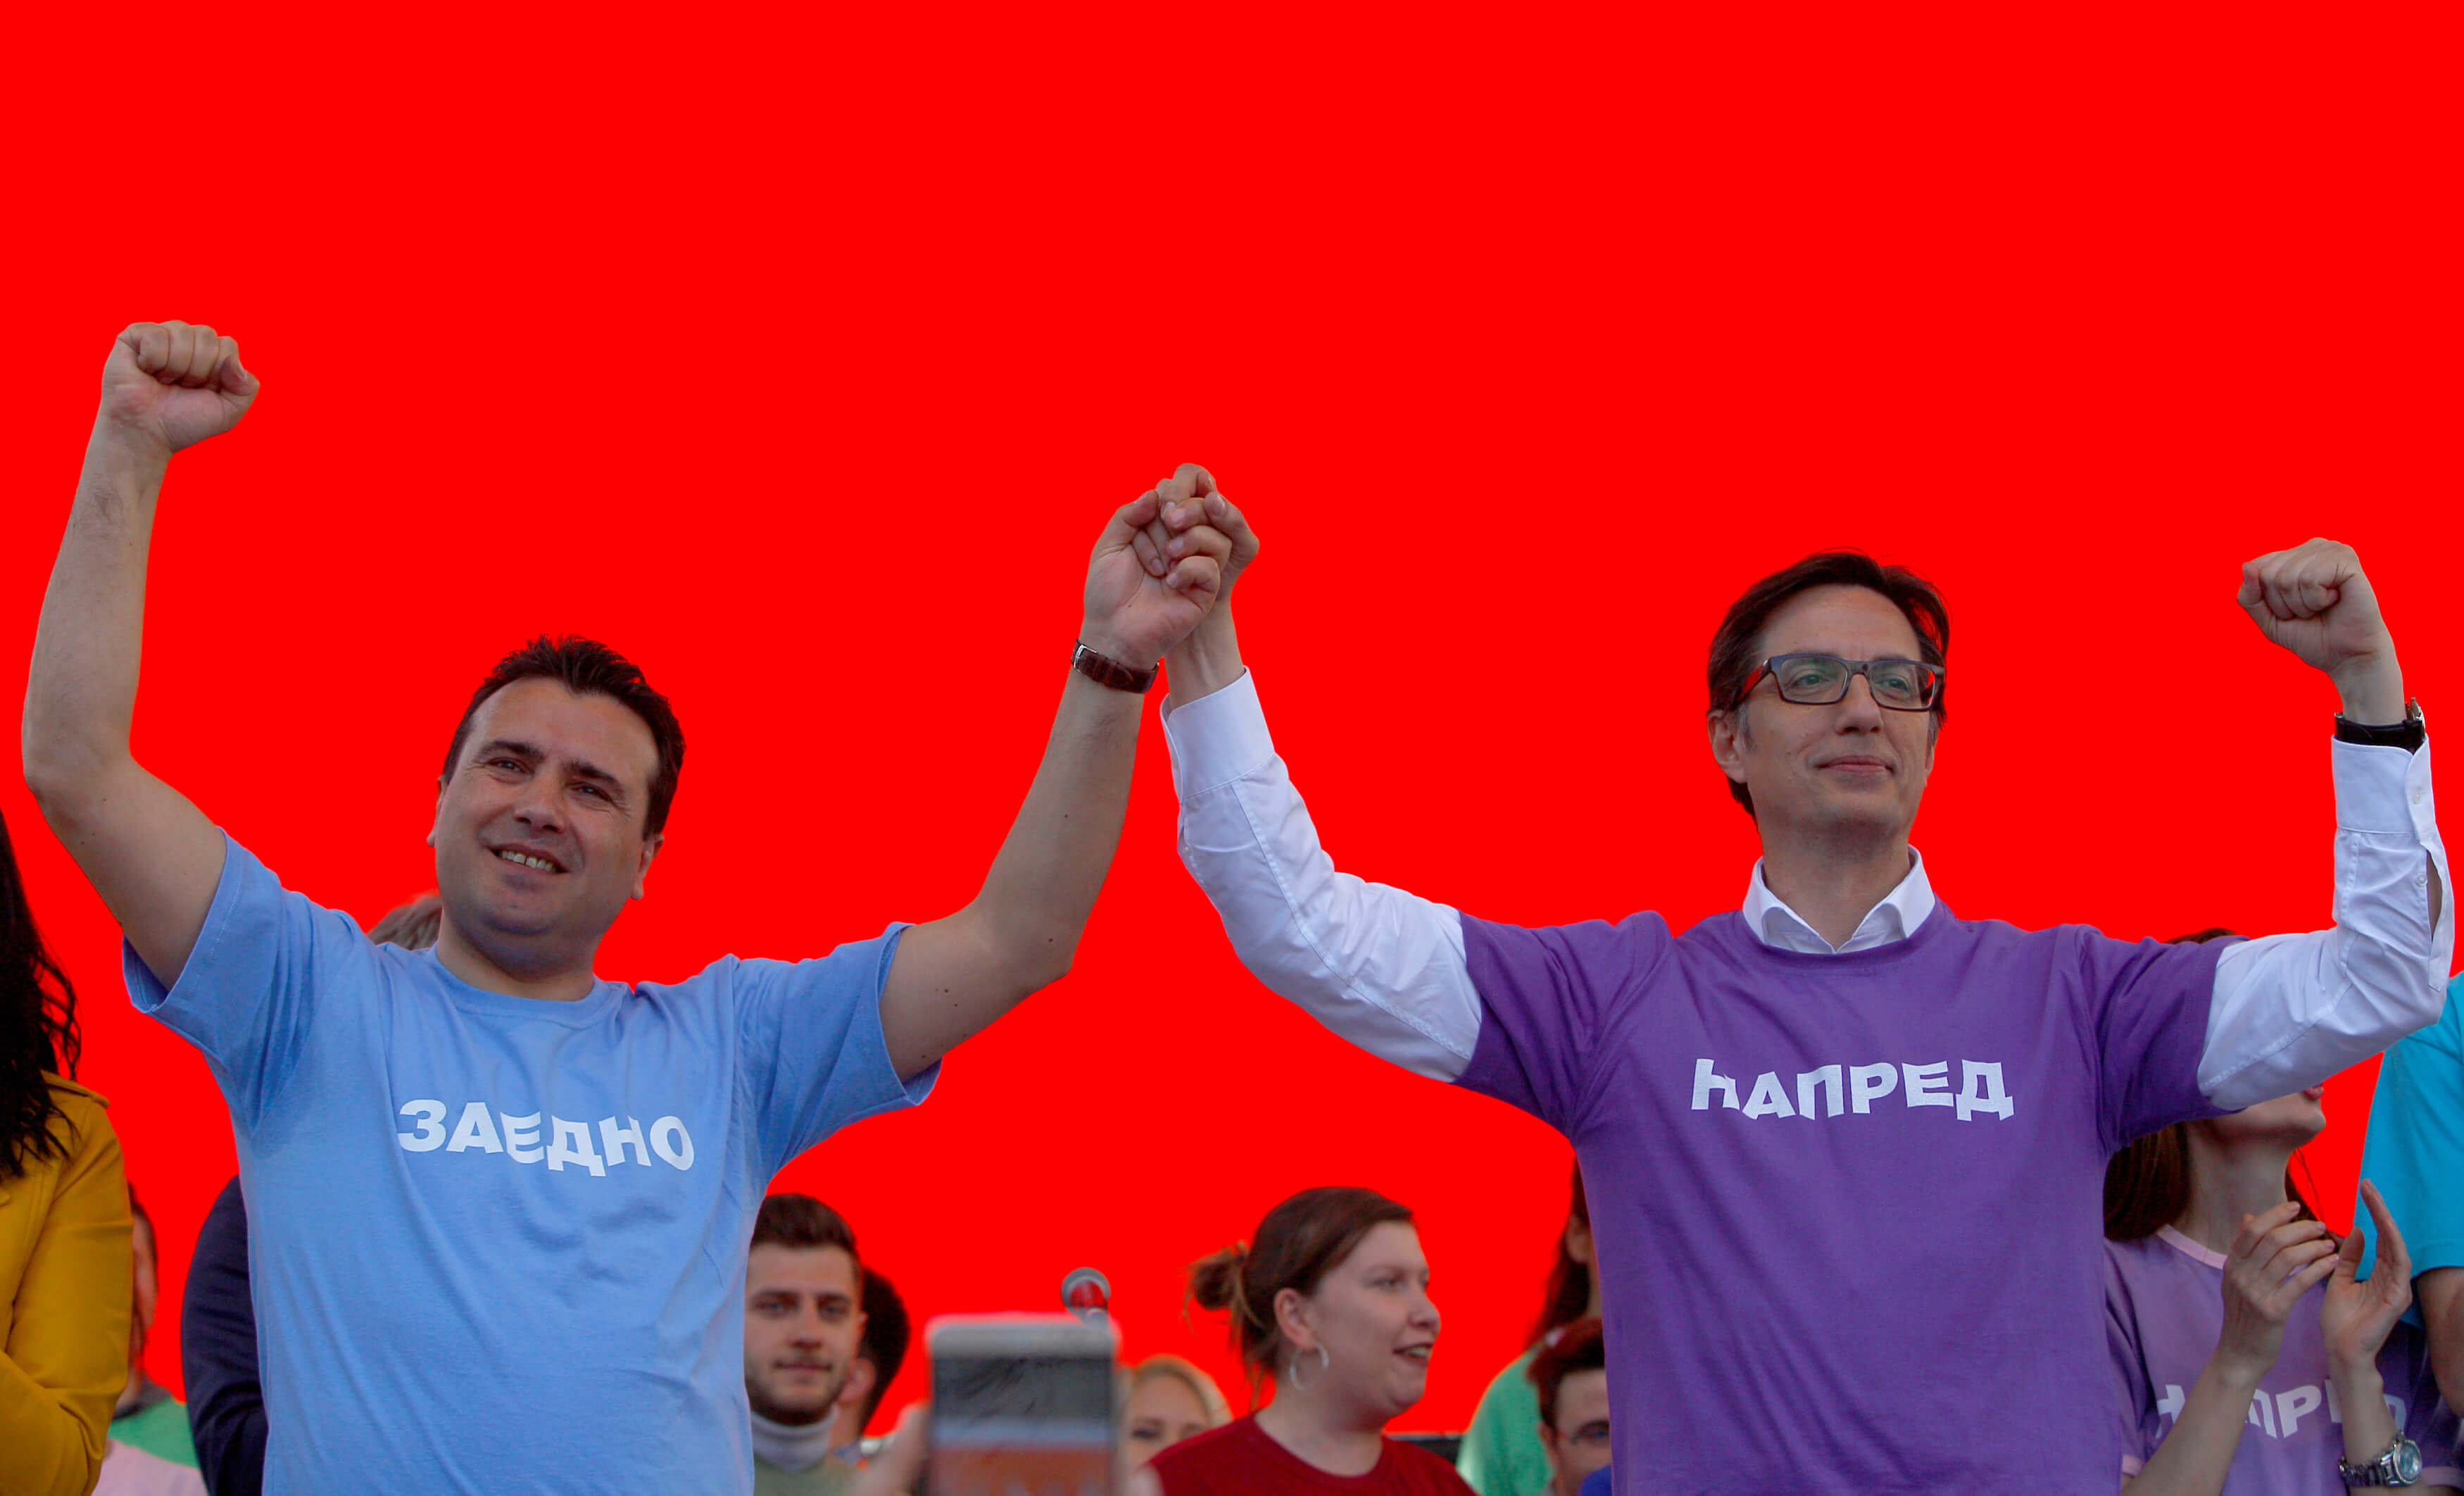 Βόρεια Μακεδονία – Προεδρικές Εκλογές: Μικρό προβάδισμα για τον Στέβο Πενταρόφσκι [pics]